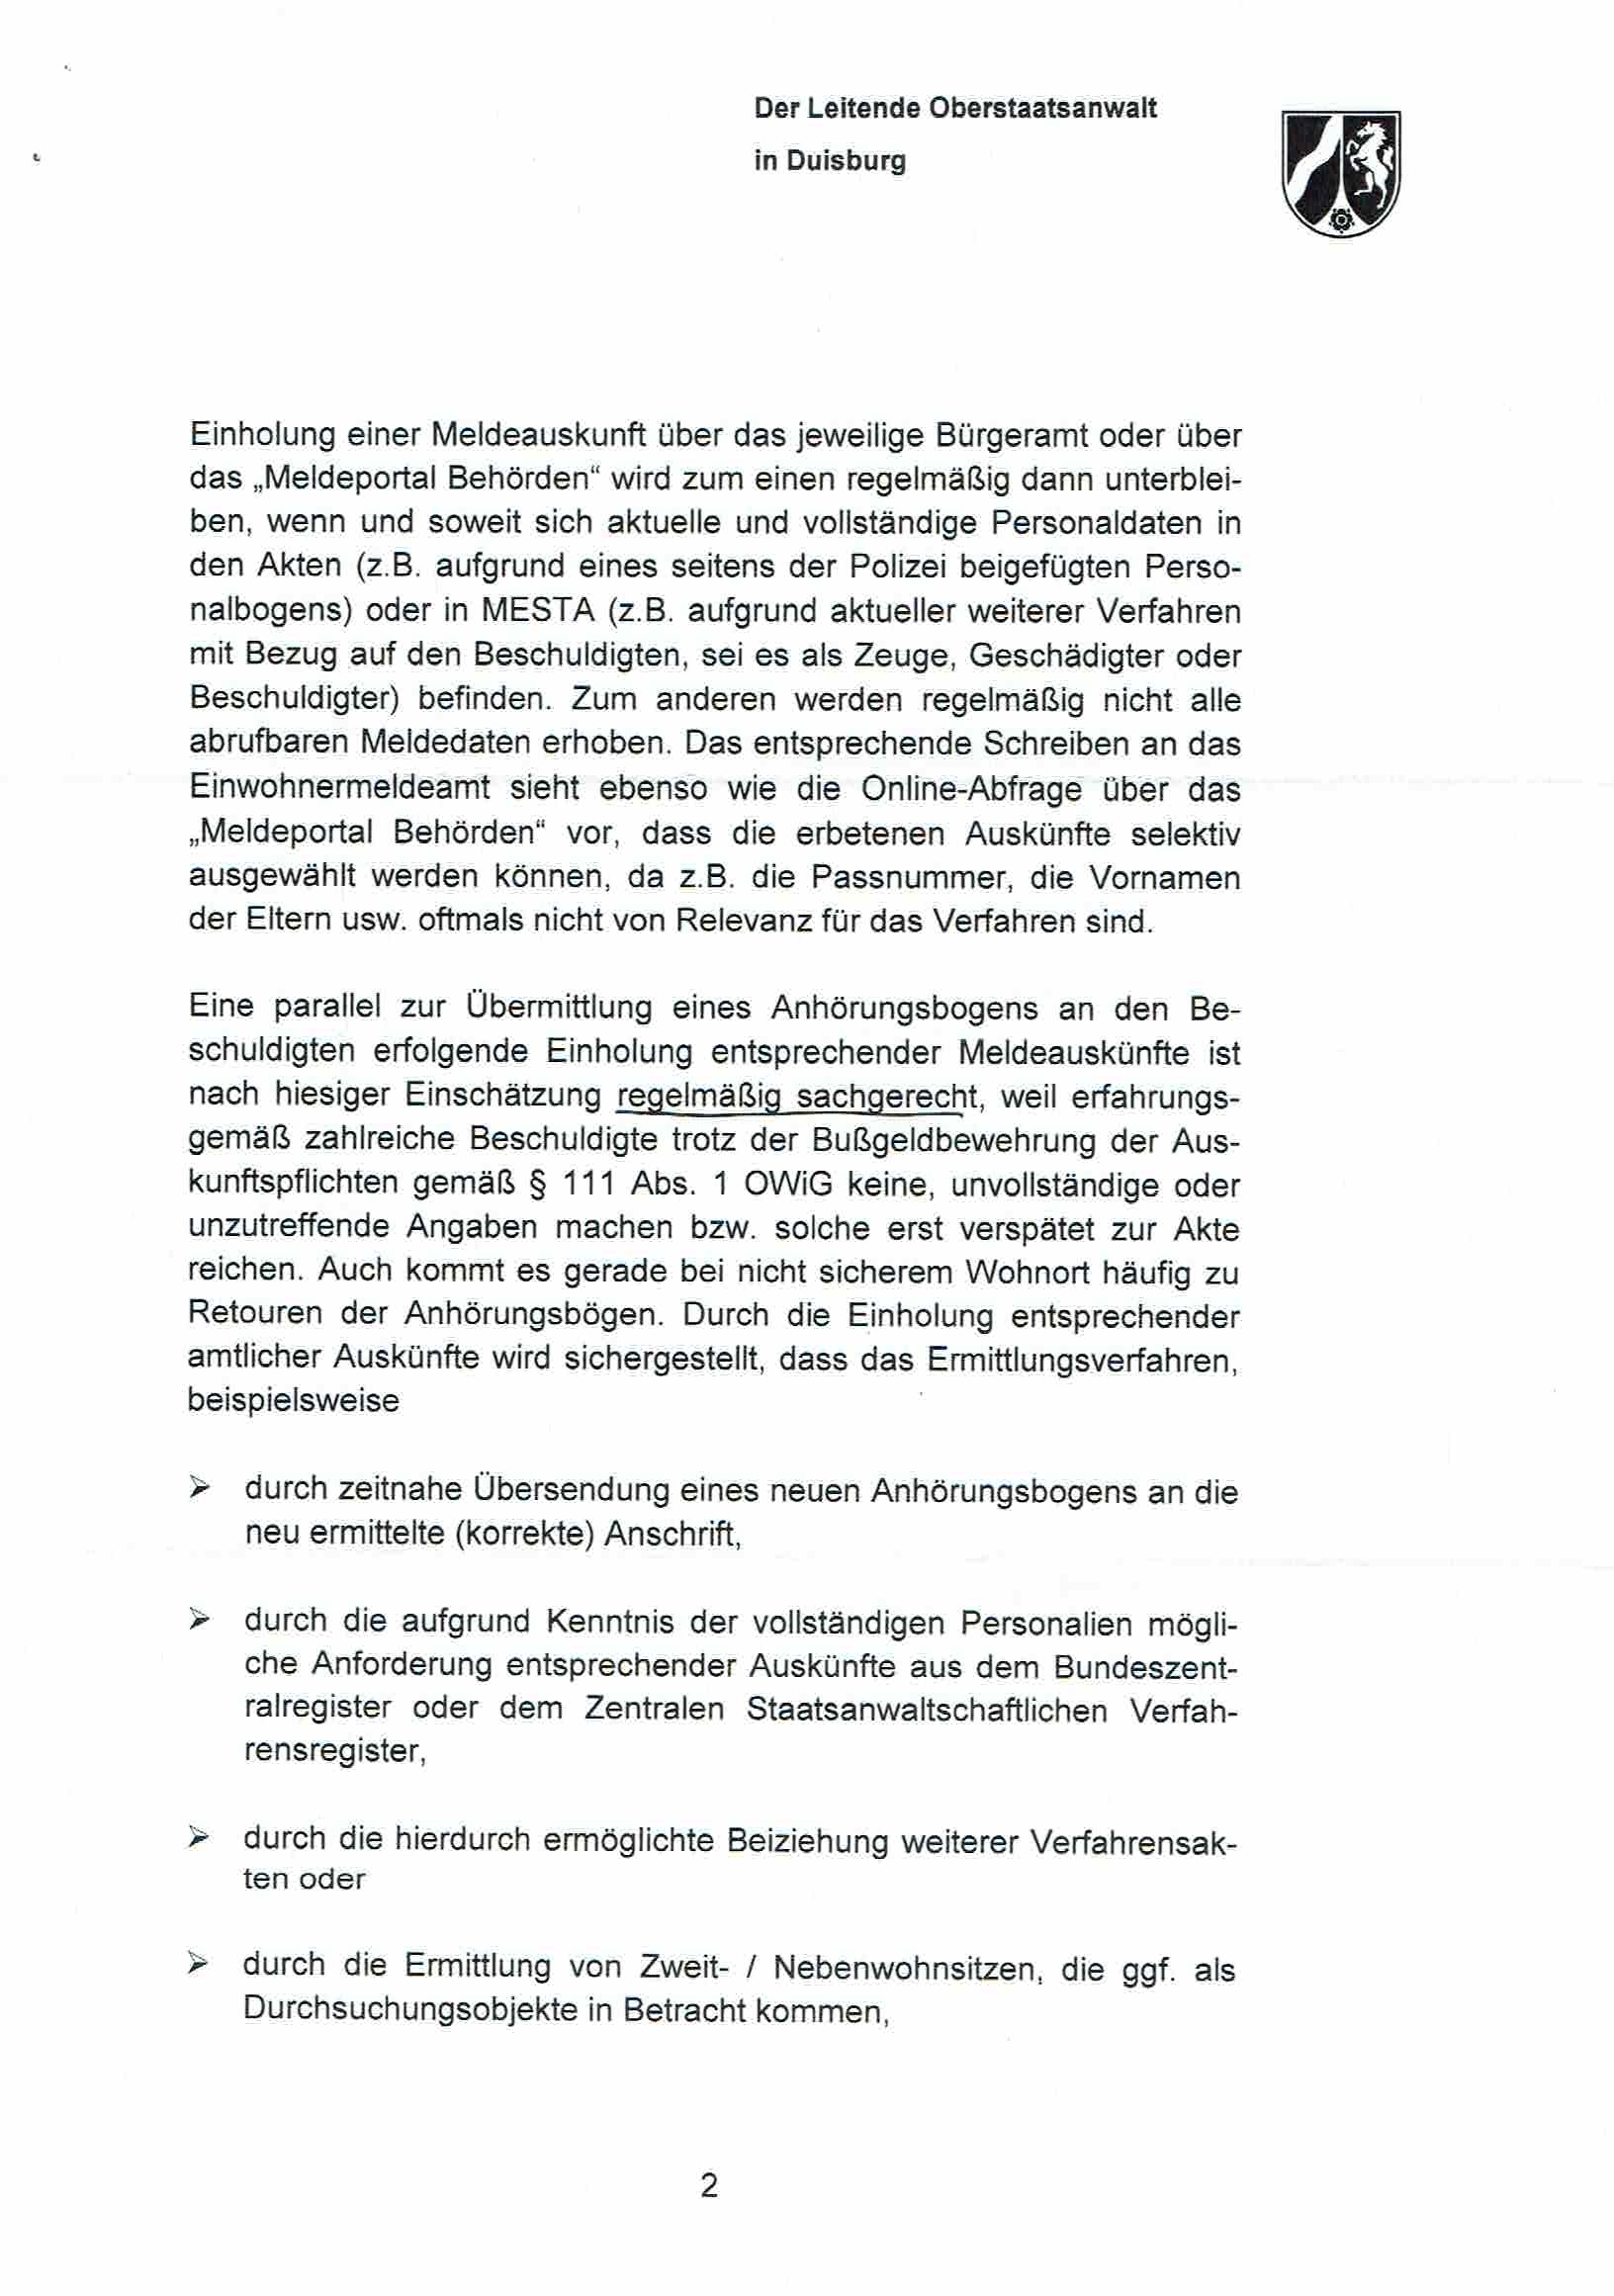 Nachricht der Landesbeauftragen für Datenschutz und Informationsfreiheit Nordrhein-Westfalen vom 30.05.2017, Anlage S. 2